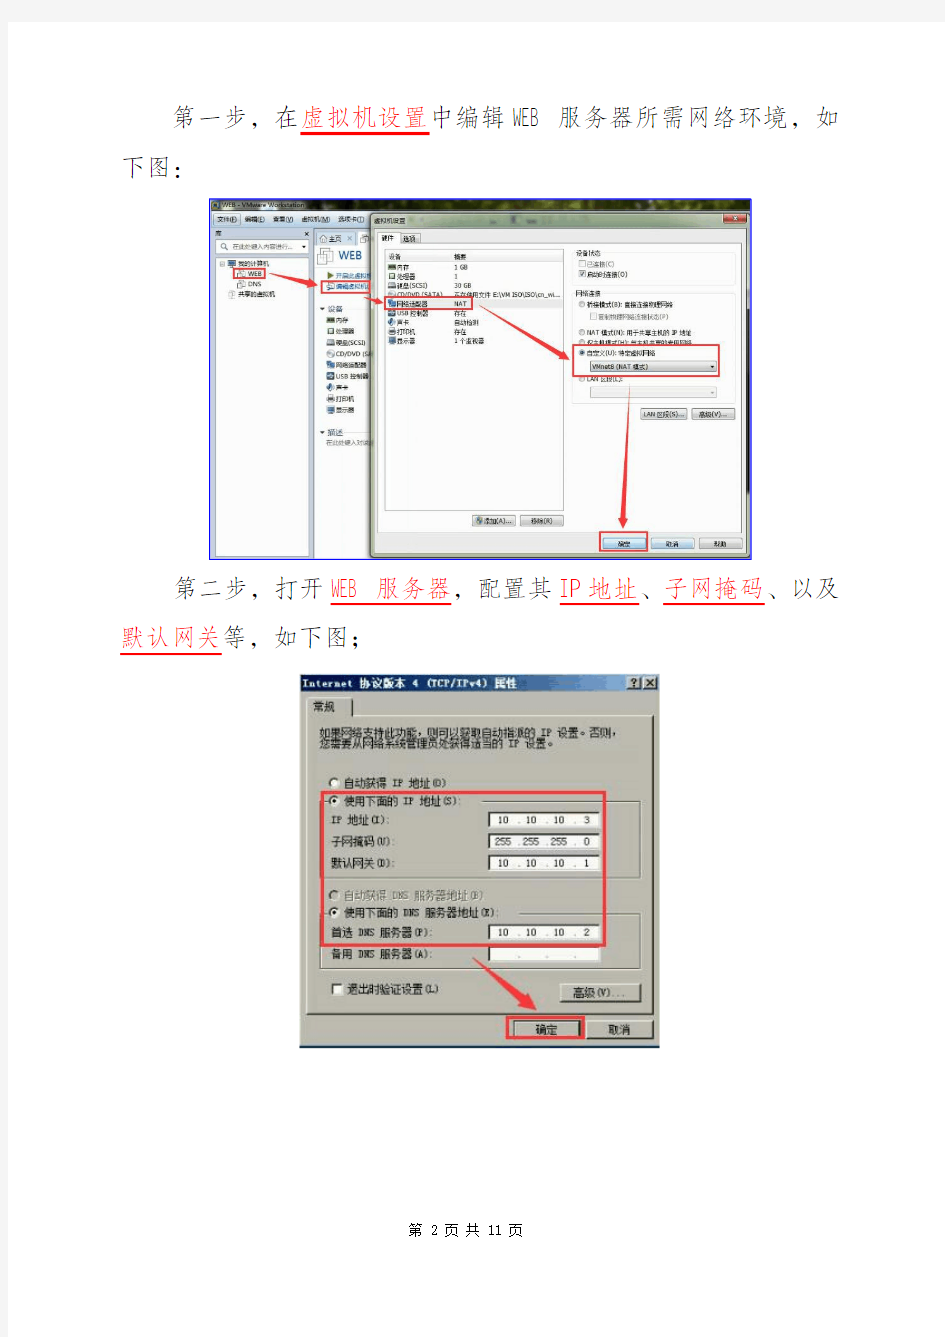 在Windows 2008R2配置WEB服务器